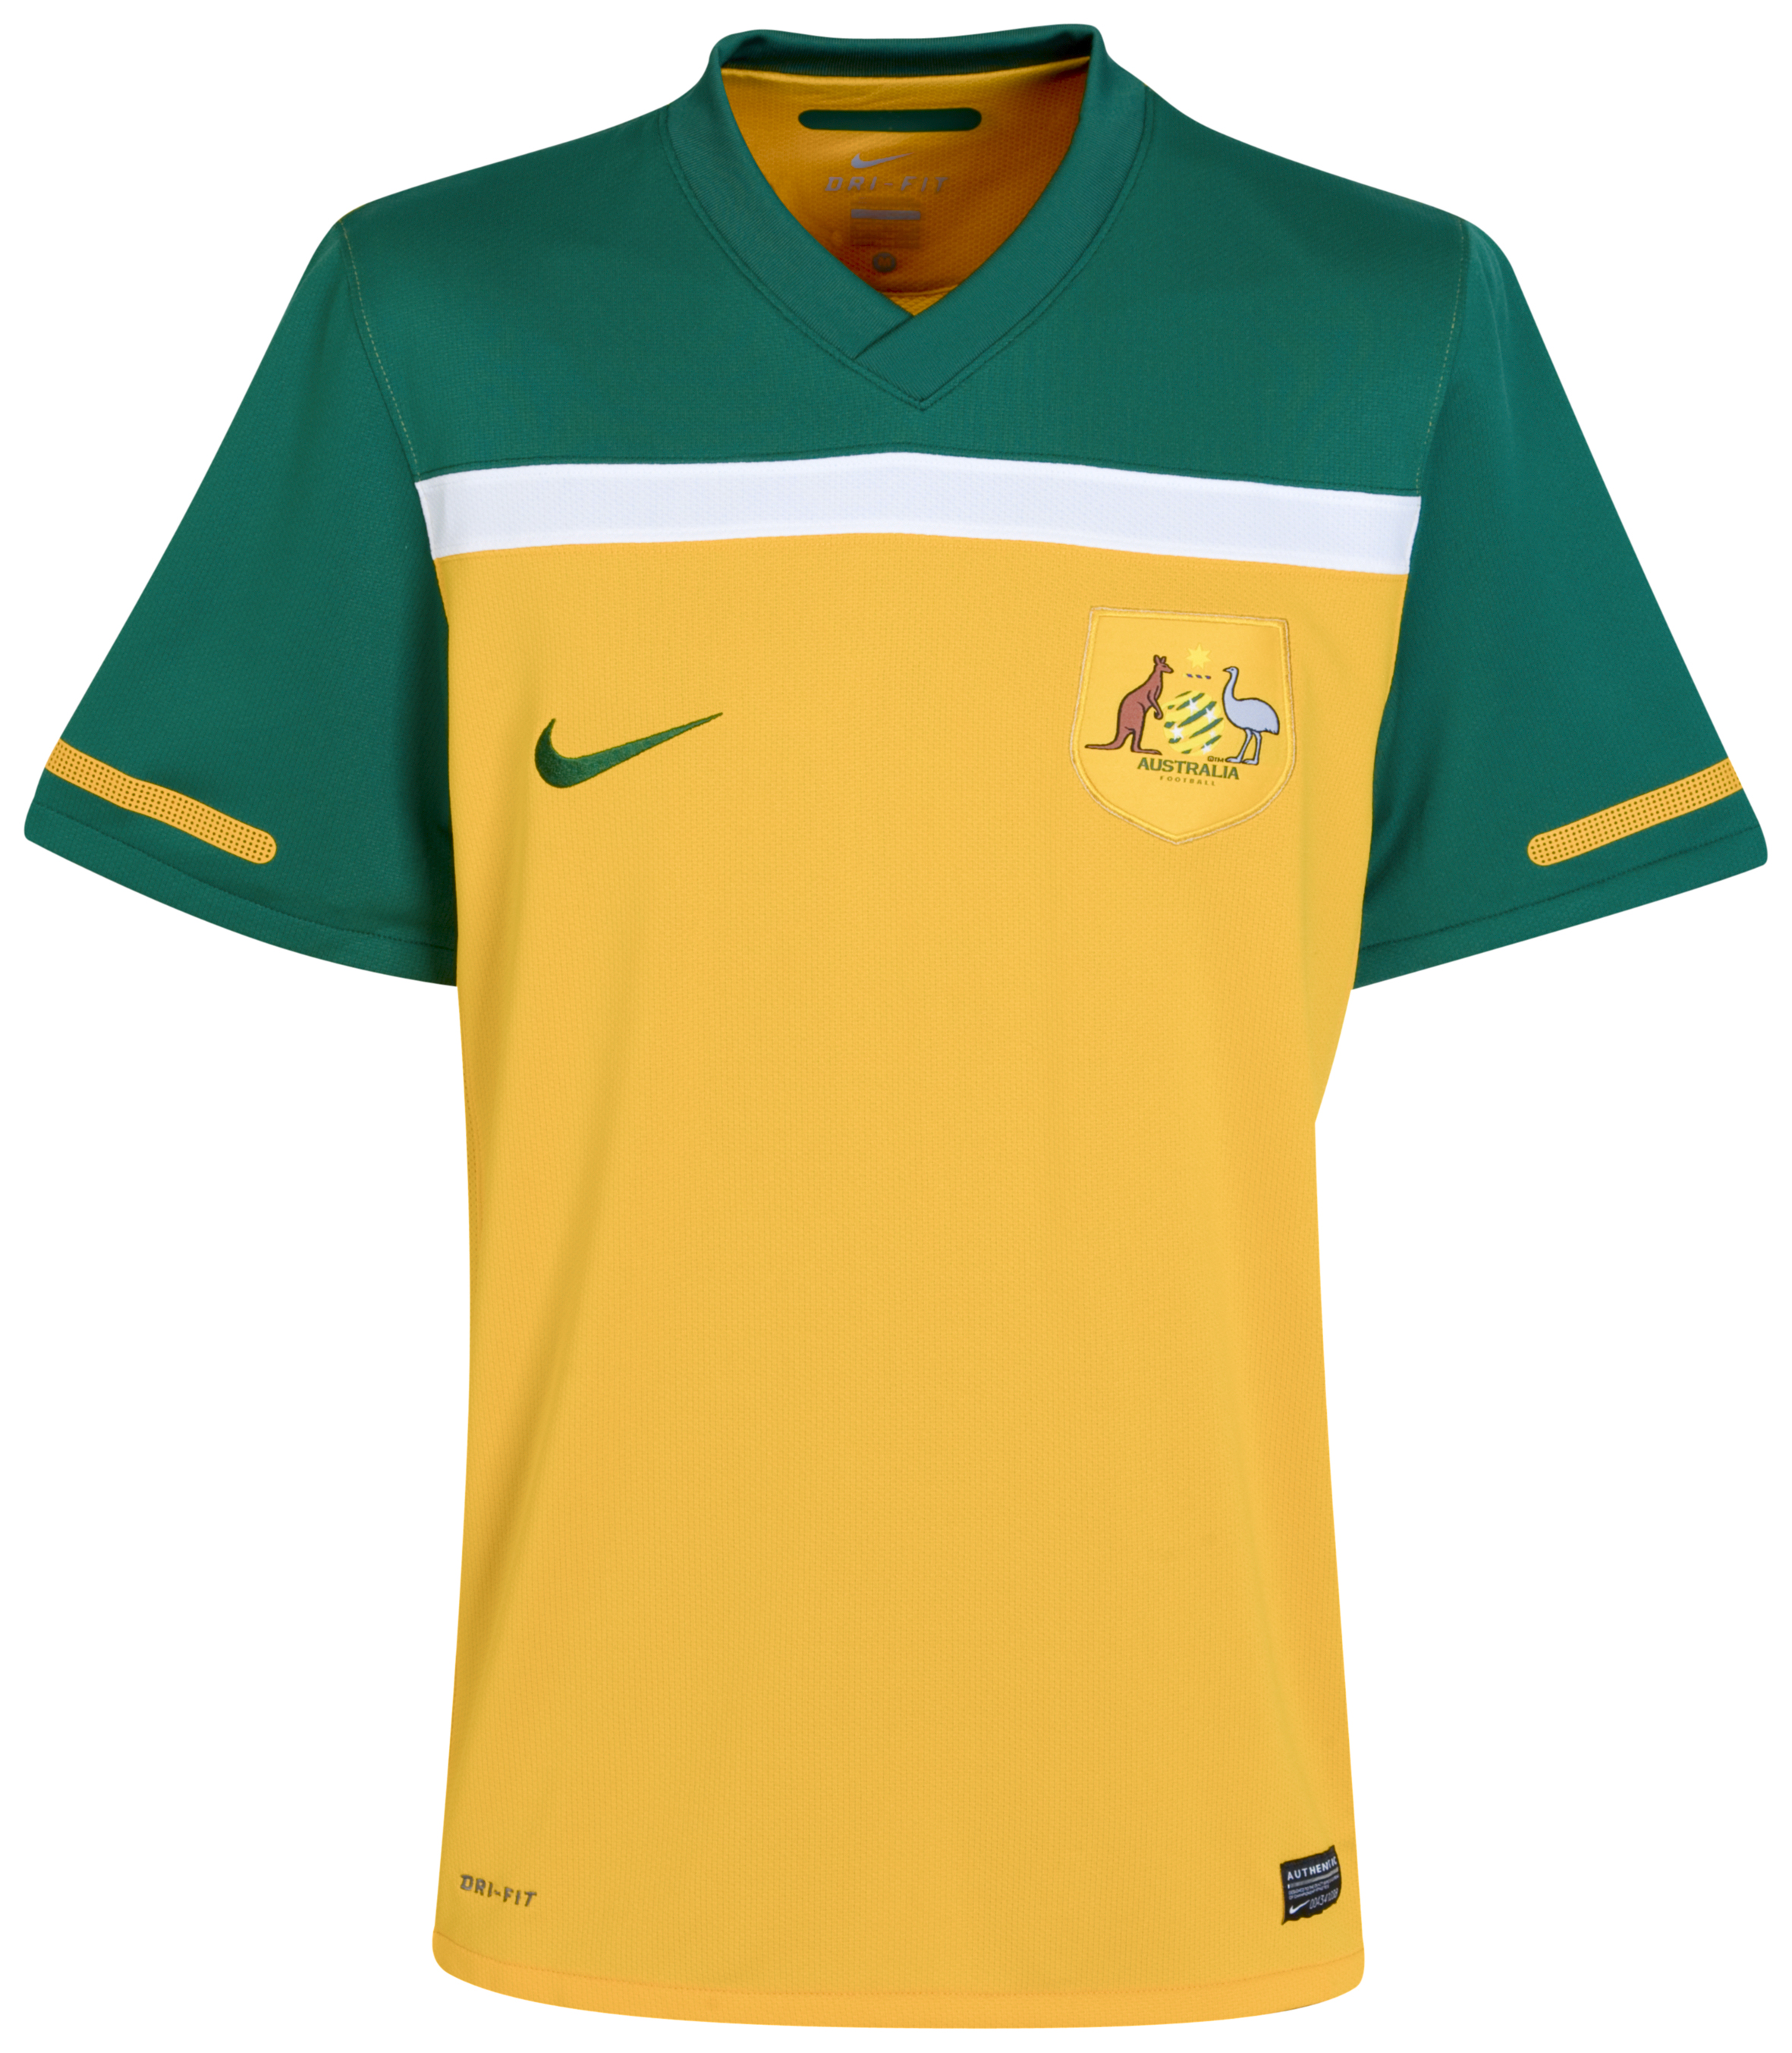 ملابس المنتخبات لكأس العالم2010م Kb-69616